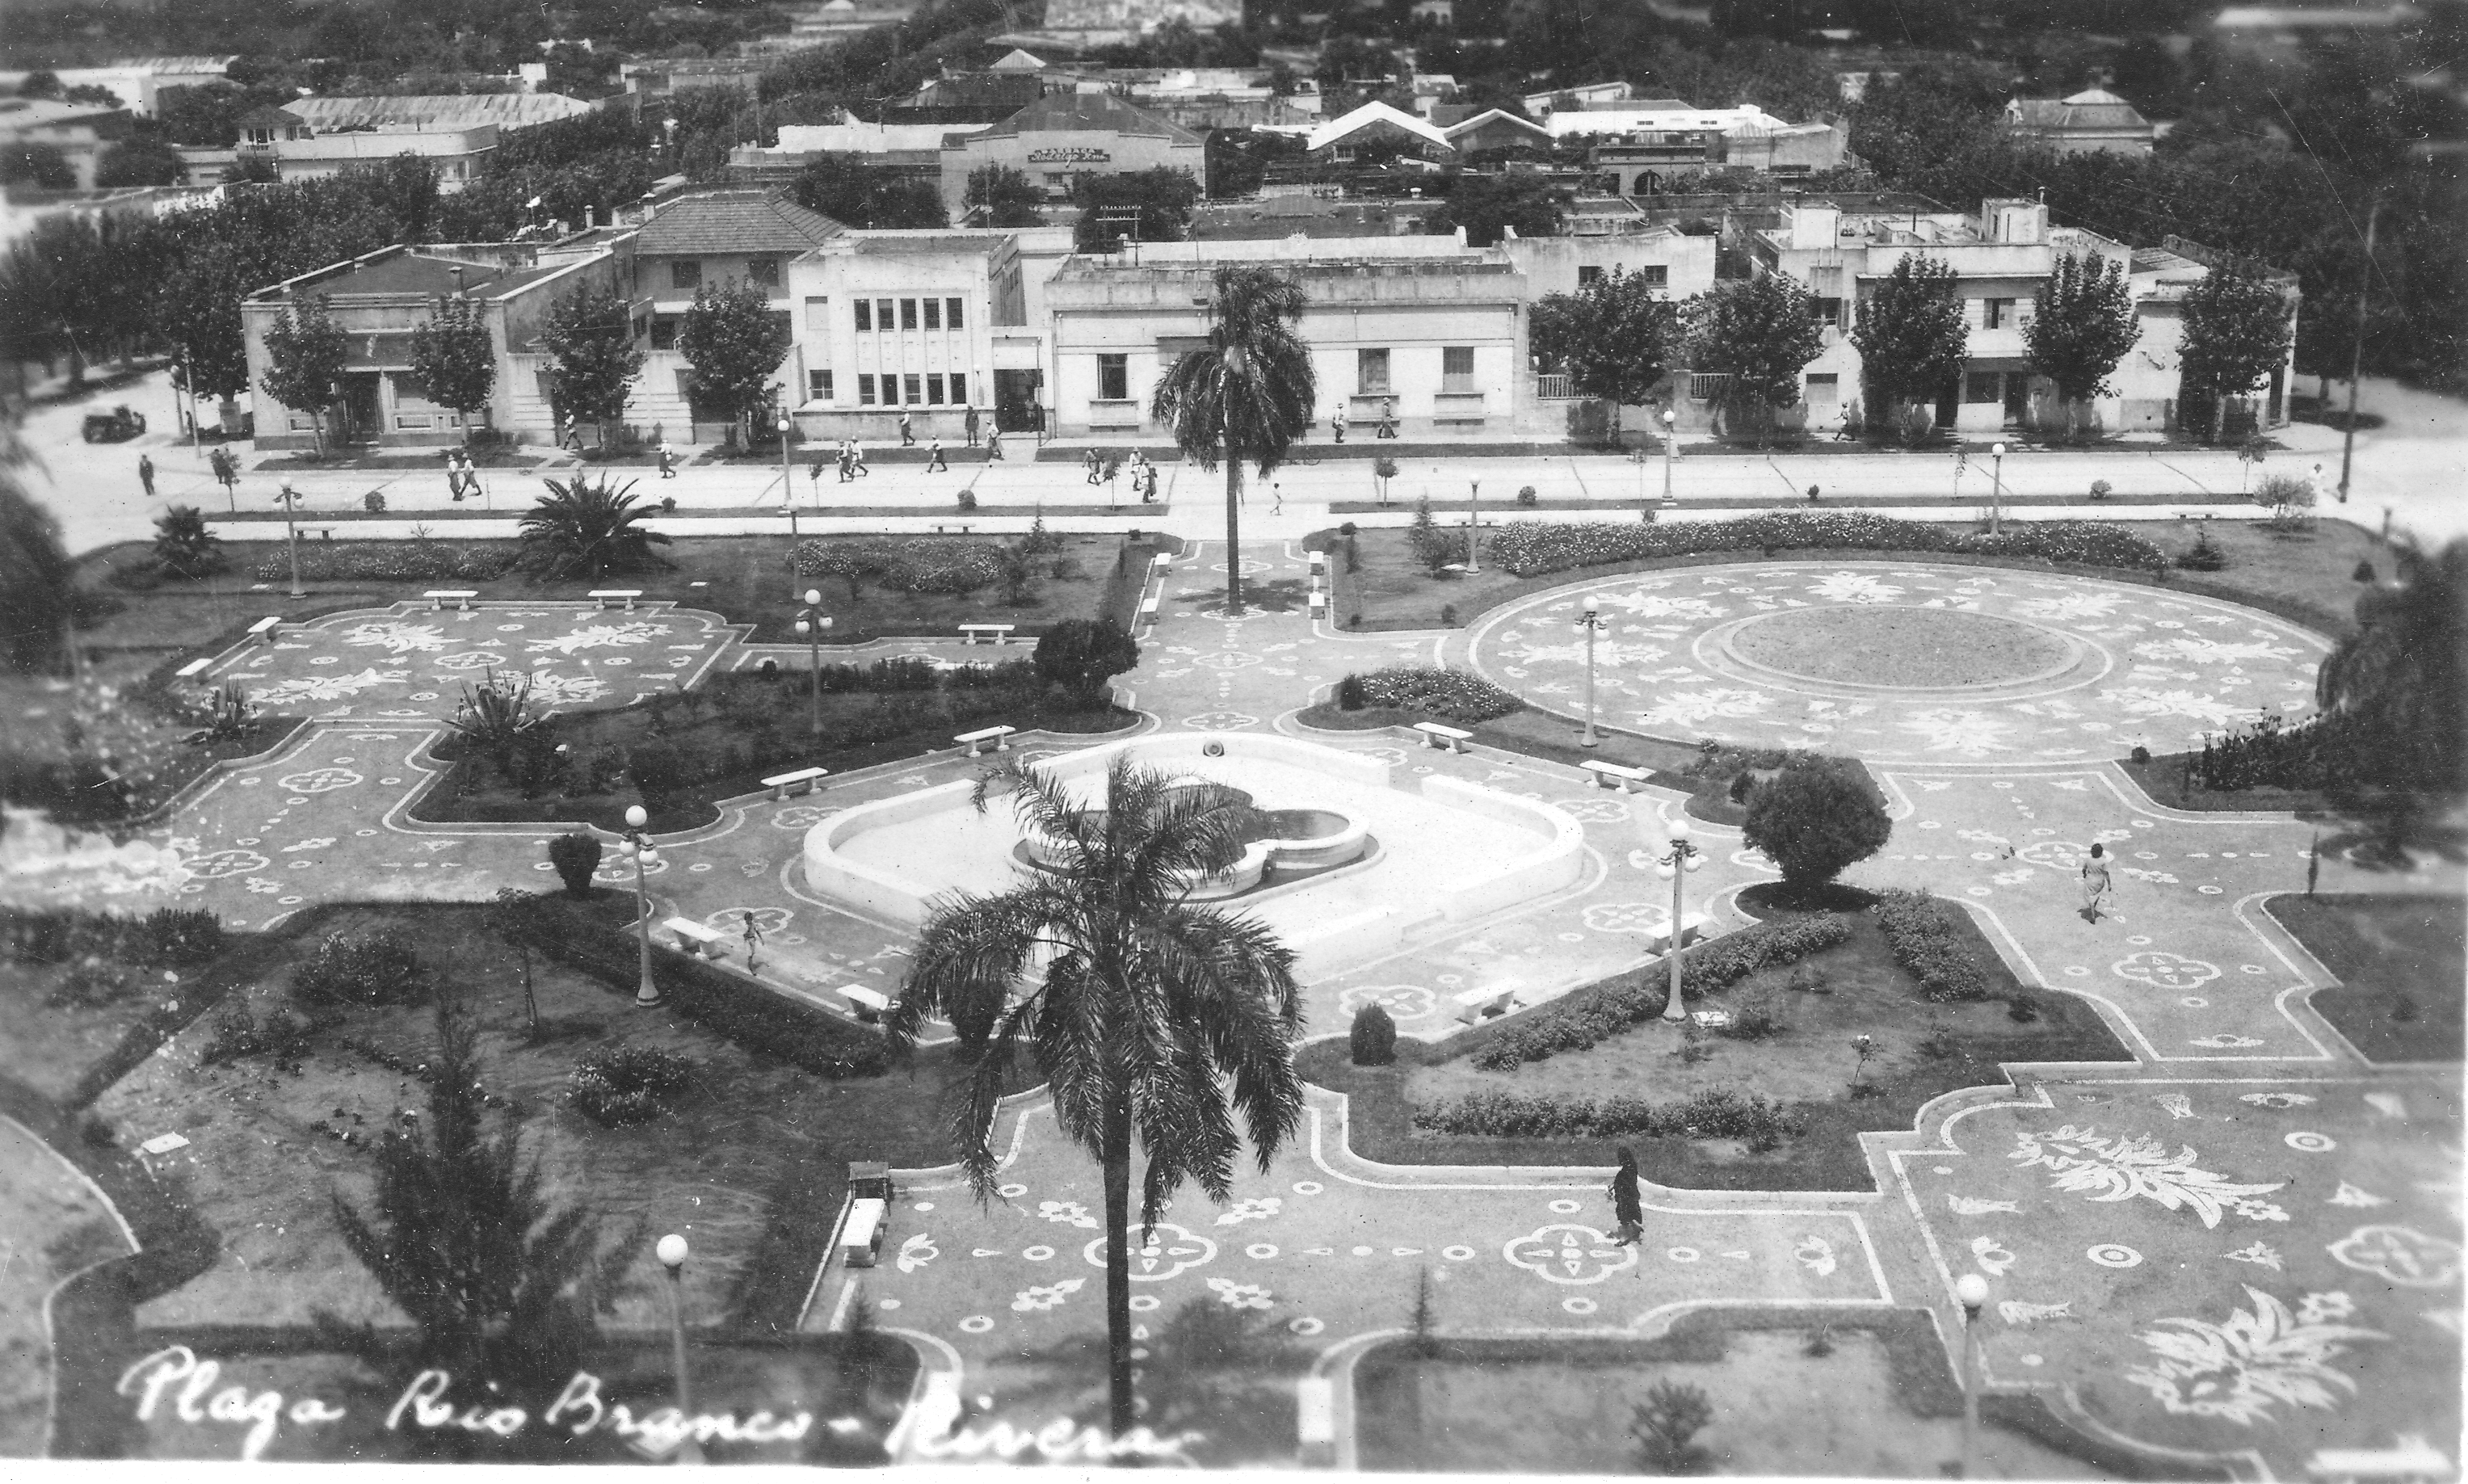 Retrato de la Plaza, se destaca el diseño y vegetación.